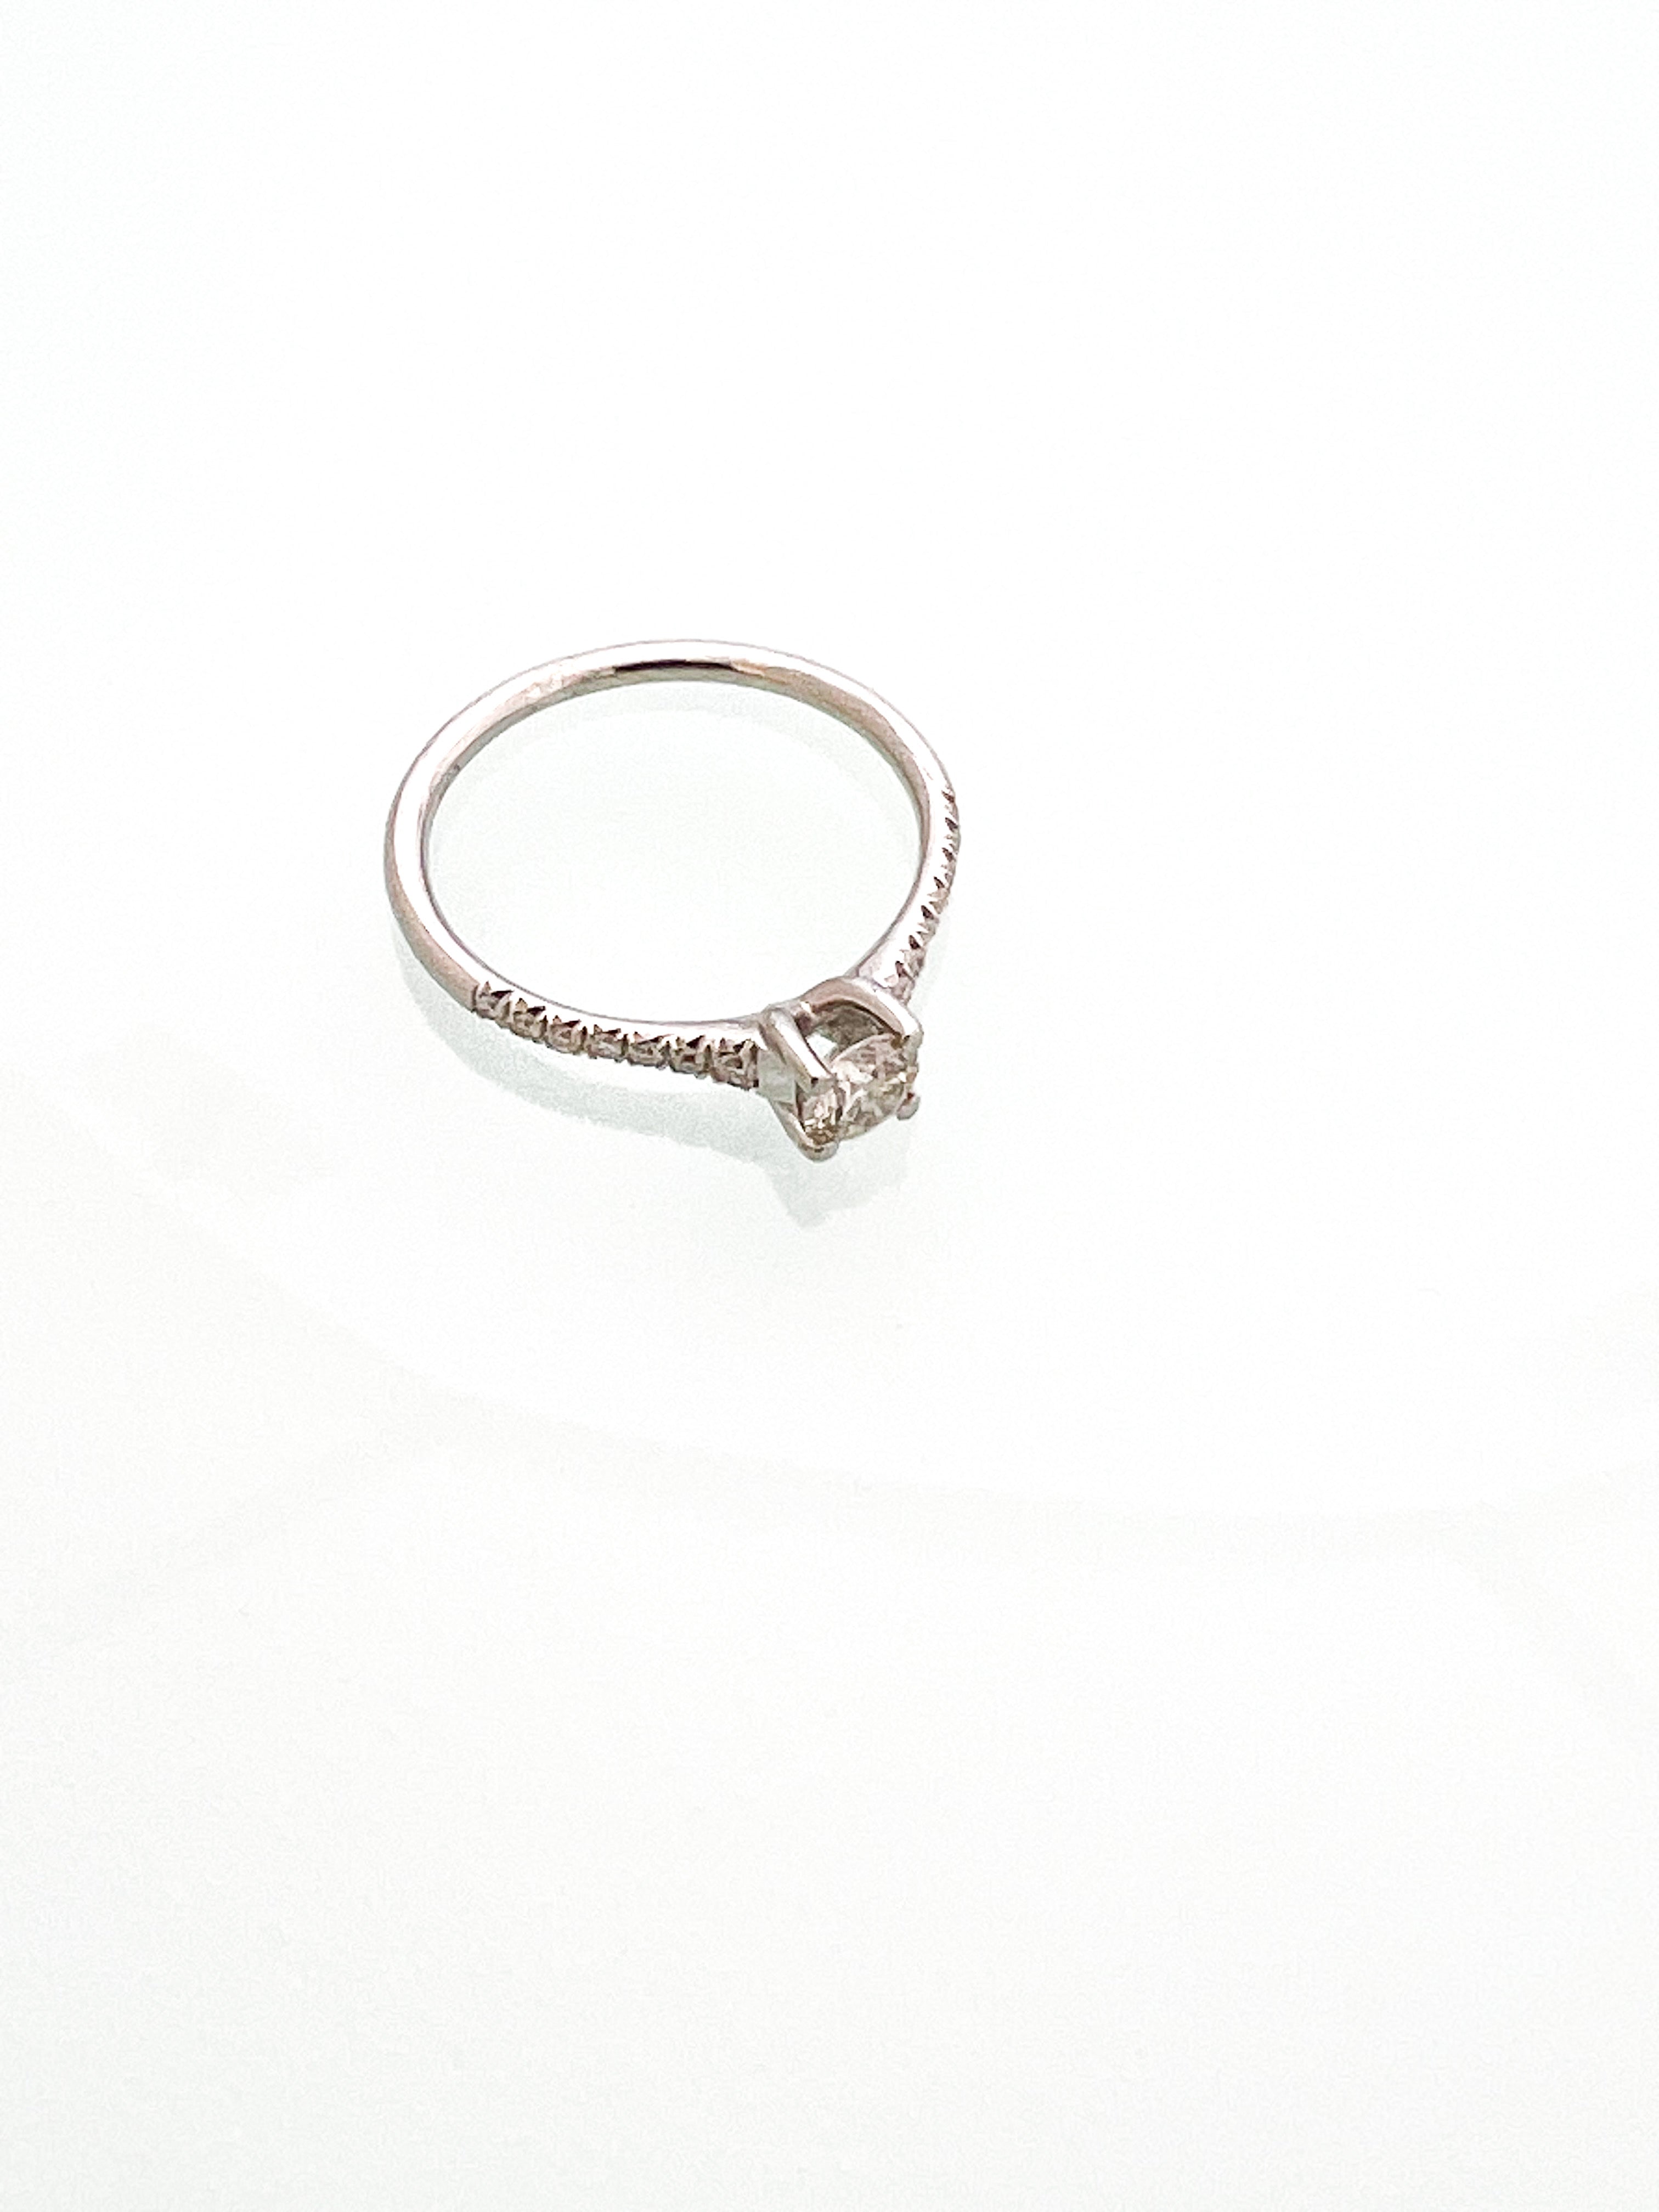 טבעת אירוסין זהב 14 קארט עם יהלום מרכזי וחצי שיבוץ בצדדים